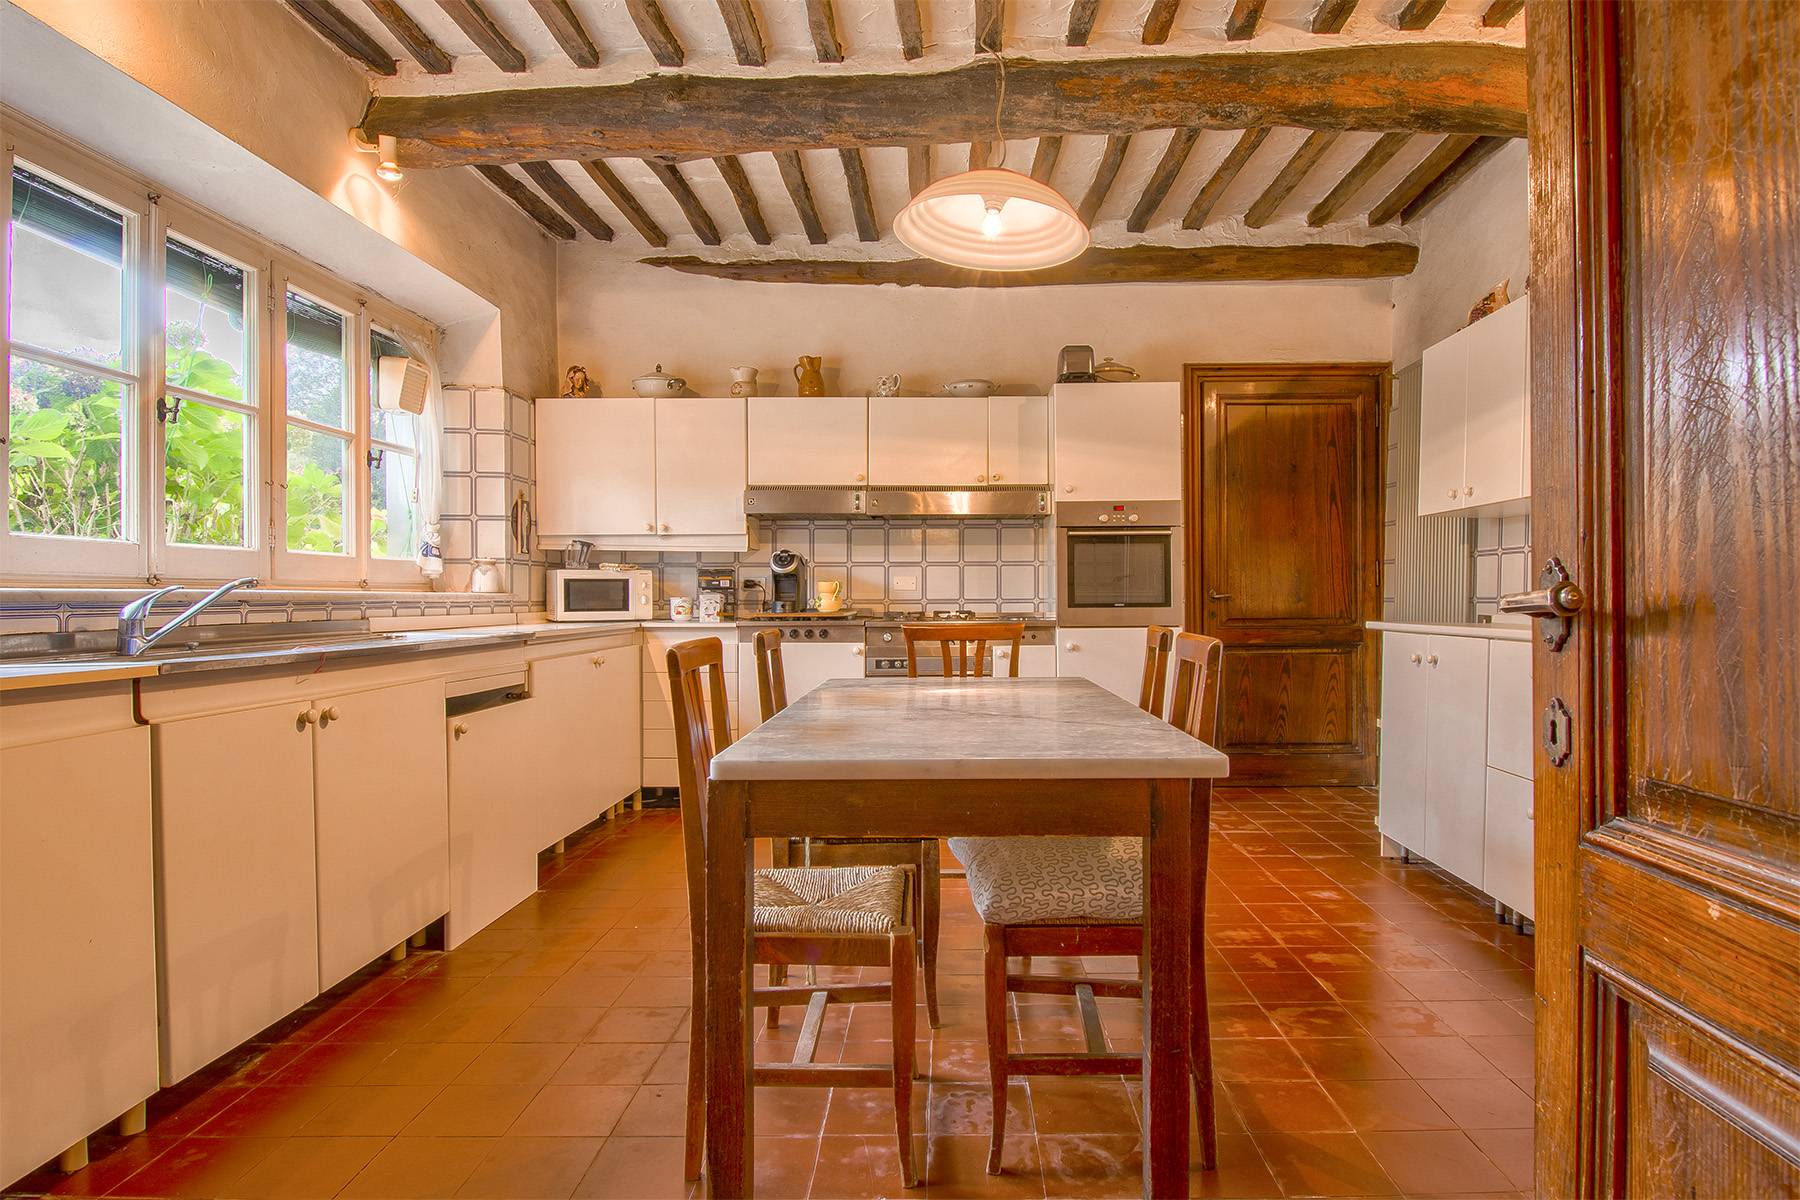 Casa indipendente in Vendita a Lucca: 5 locali, 500 mq - Foto 16